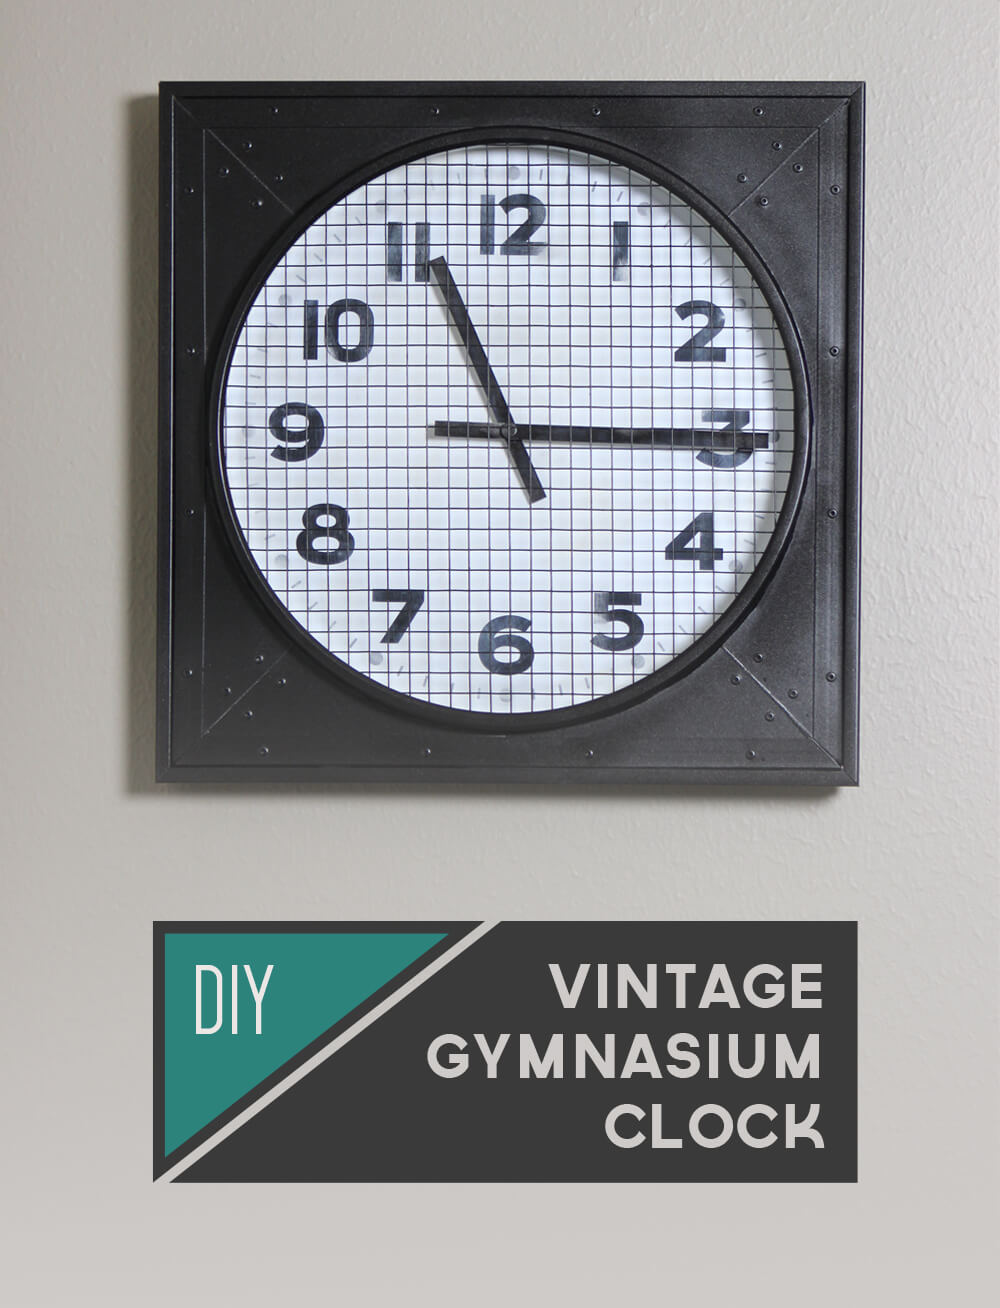 DIY Vintage Gymnasium Clock